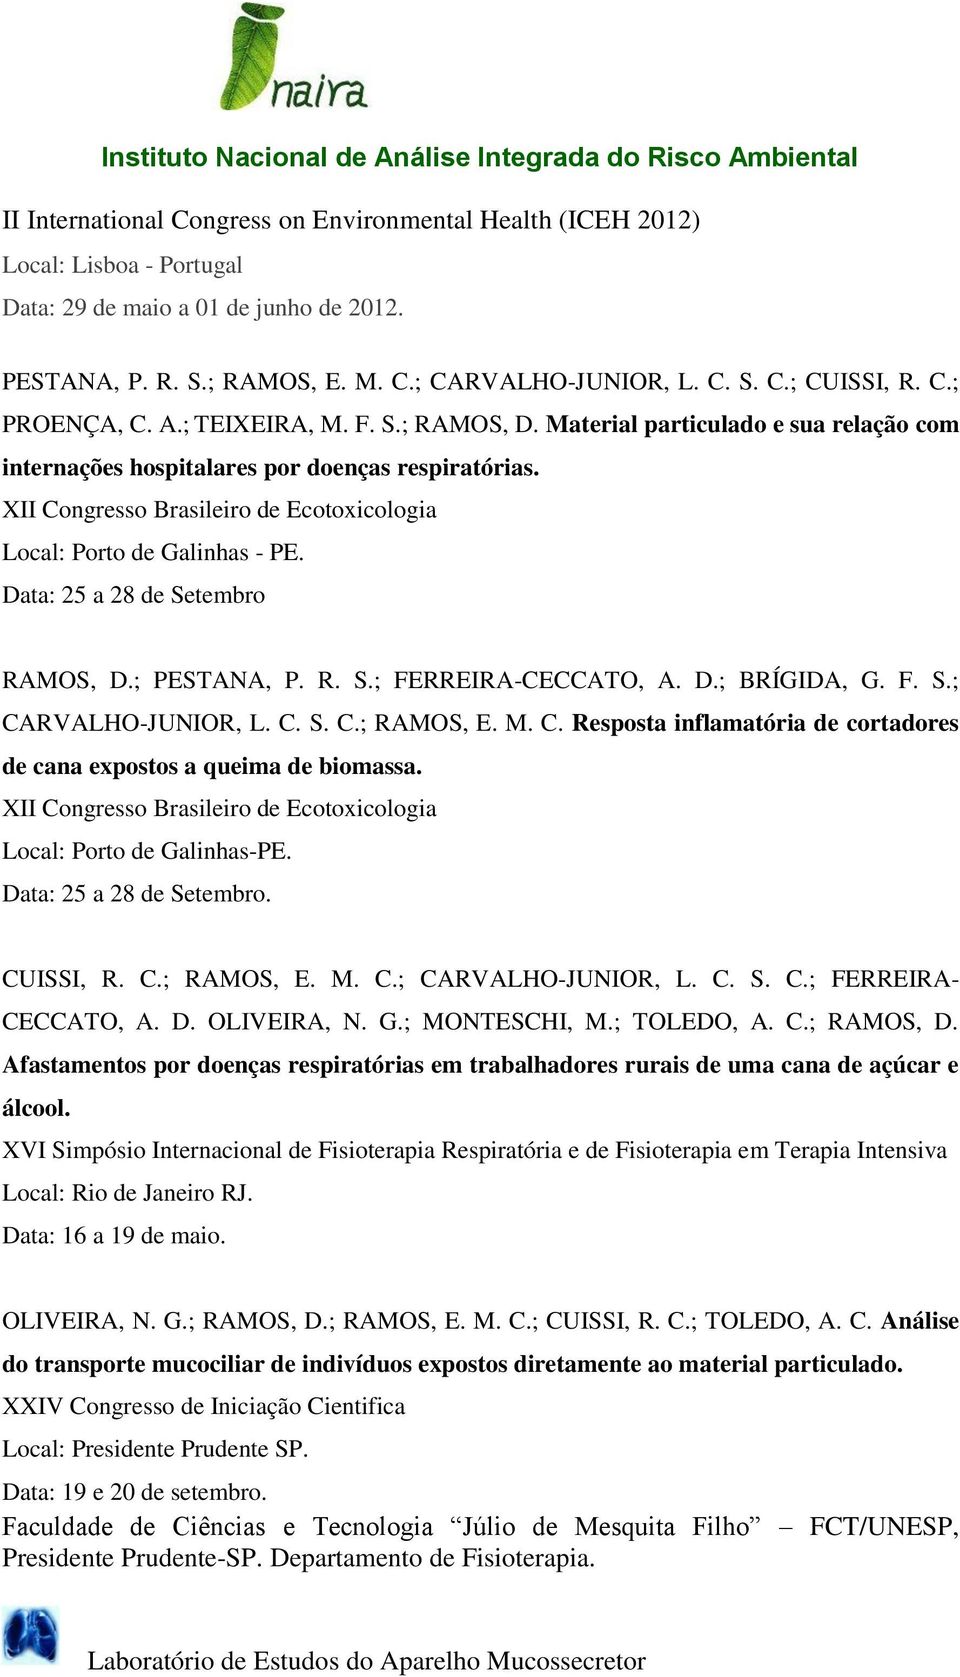 XII Congresso Brasileiro de Ecotoxicologia Local: Porto de Galinhas - PE. Data: 25 a 28 de Setembro RAMOS, D.; PESTANA, P. R. S.; FERREIRA-CECCATO, A. D.; BRÍGIDA, G. F. S.; CARVALHO-JUNIOR, L. C. S. C.; RAMOS, E.